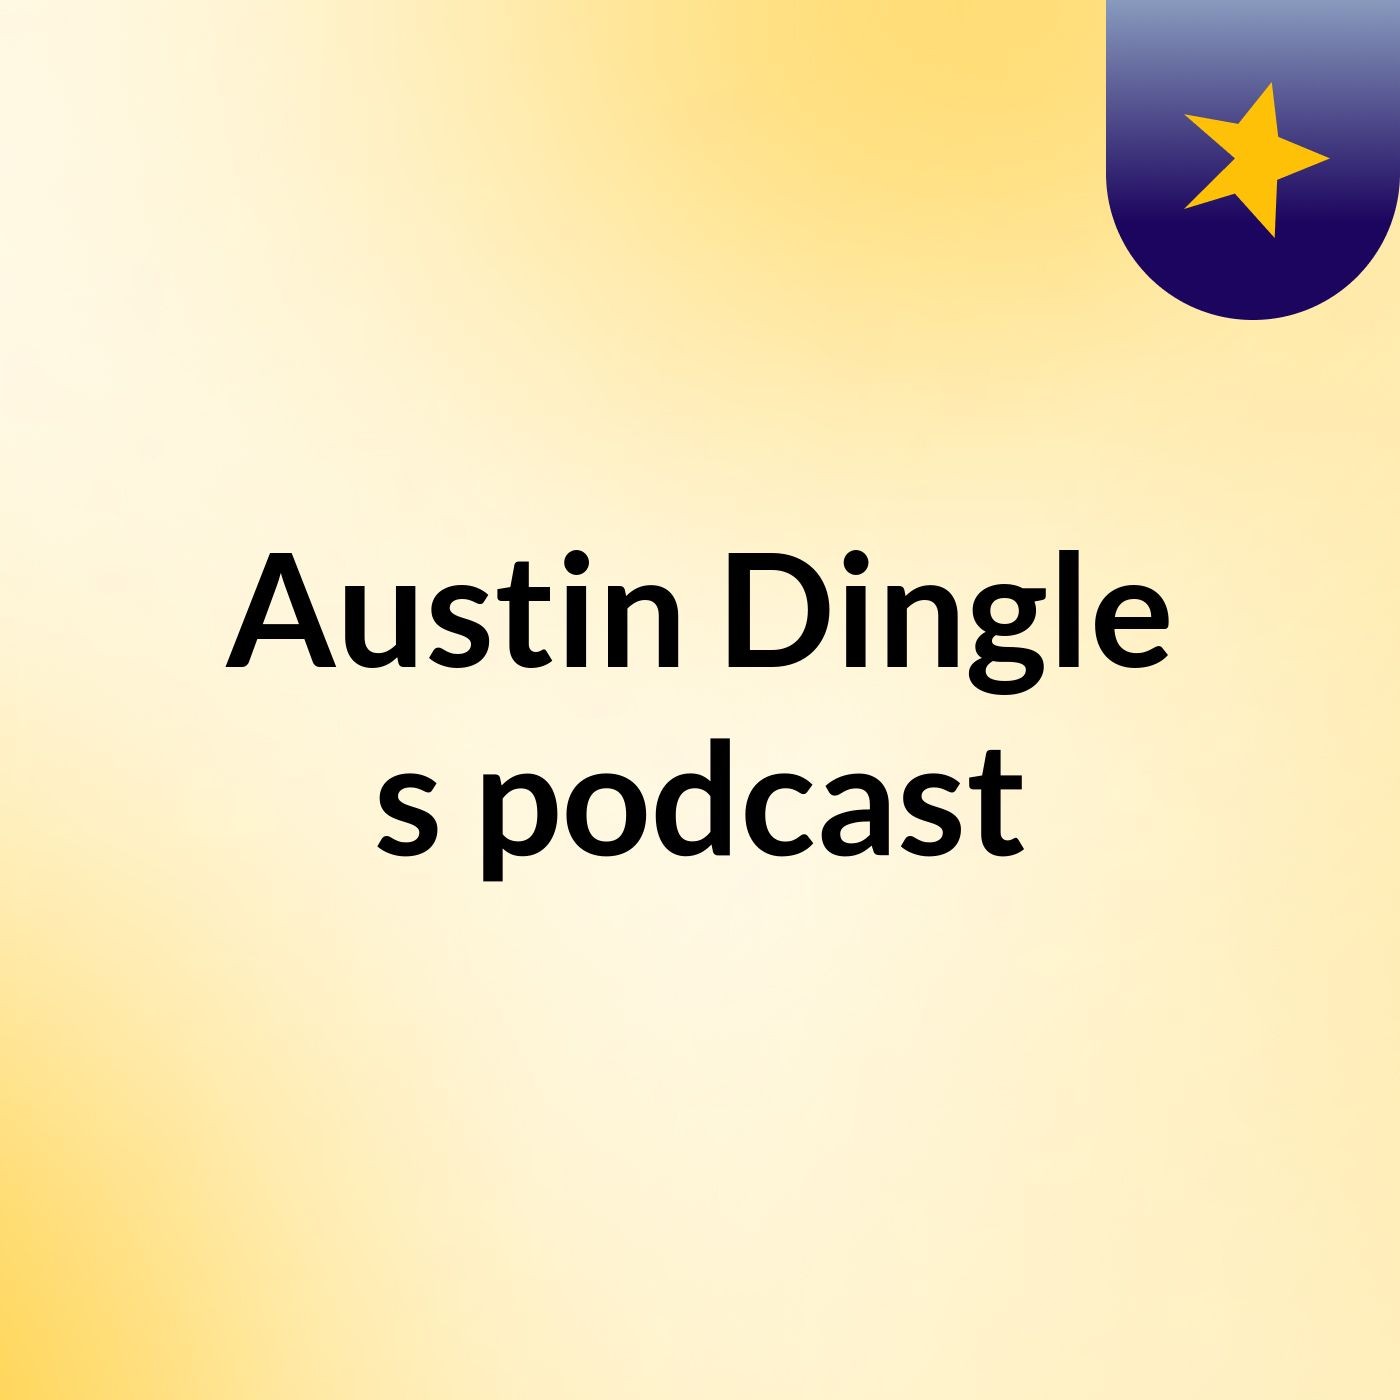 Austin Dingle's podcast